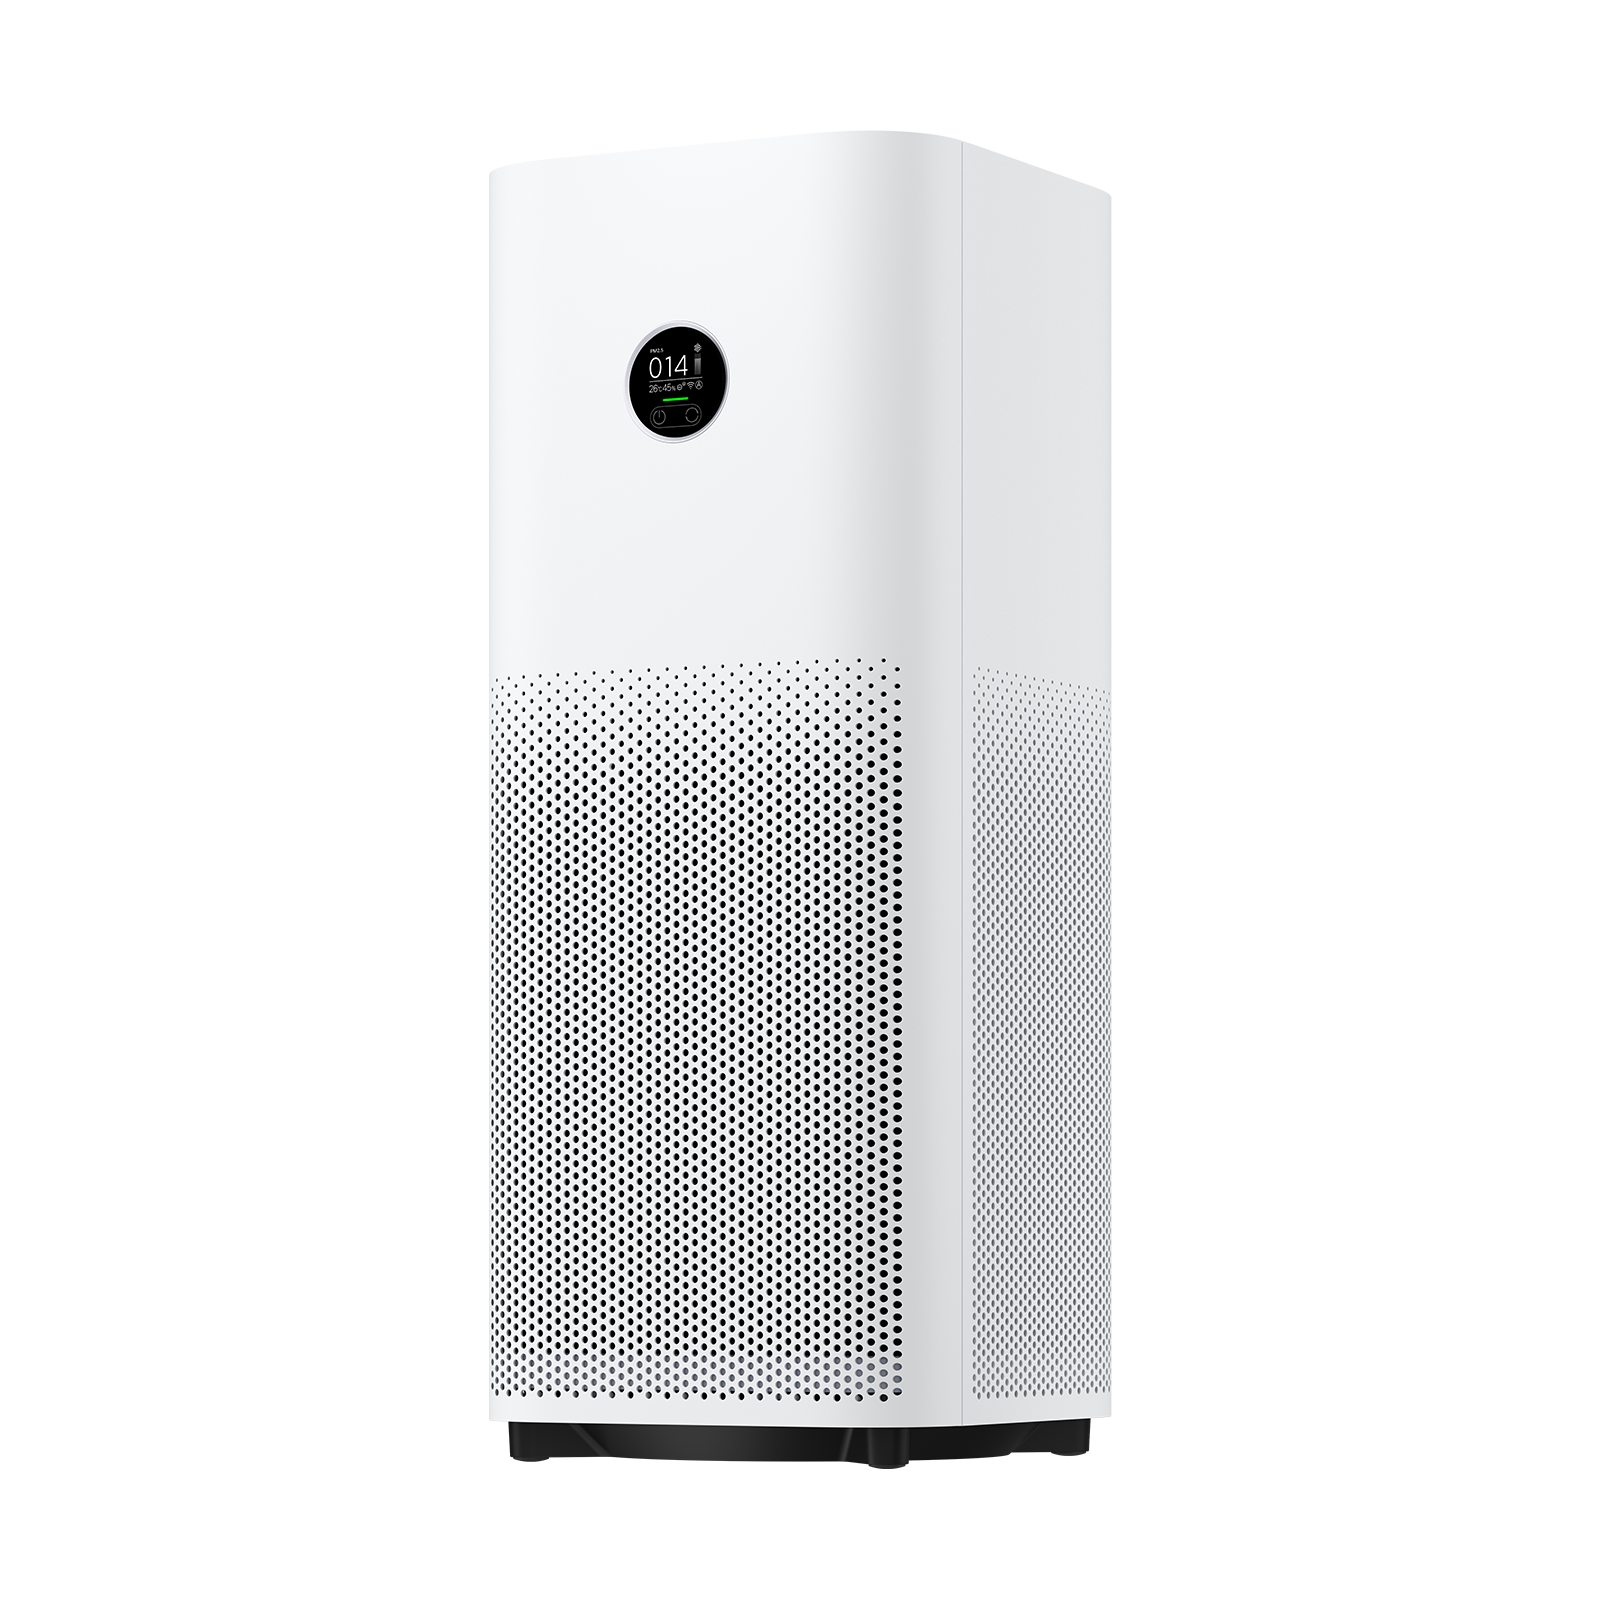 Xiaomi Smart Air Purifier 4 Pro od Xiaomi w SimplyBuy.pl